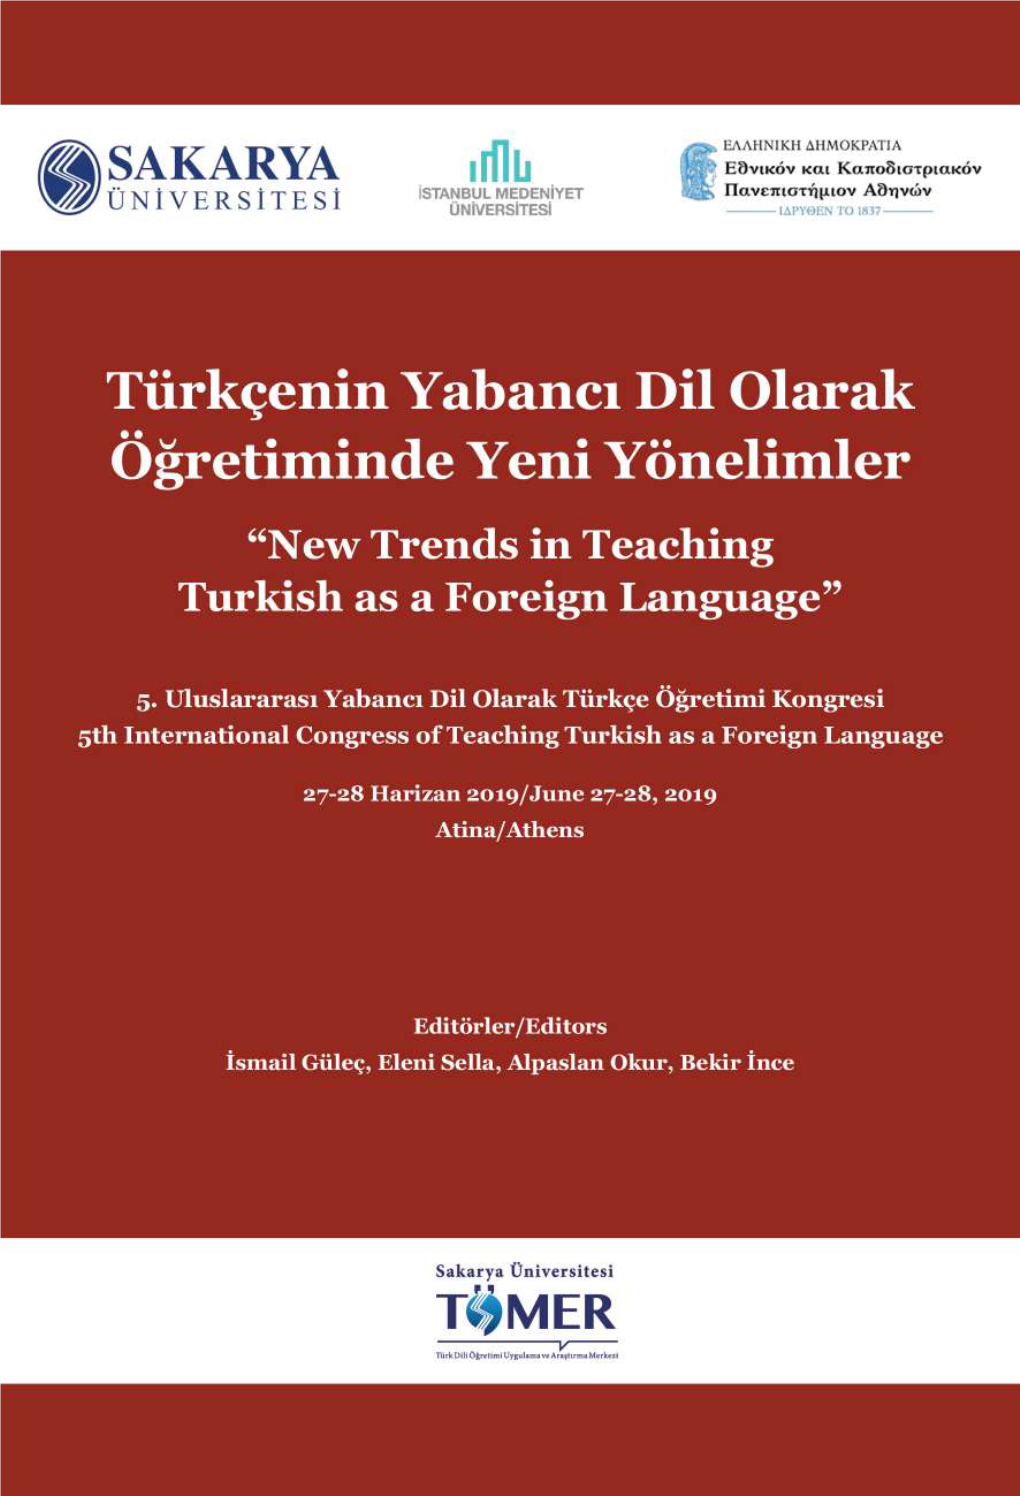 Türkçenin Yabancı Dil Olarak Öğretiminde Yeni Yönelimler “New Trends in Teaching Turkish As a Foreign Language”